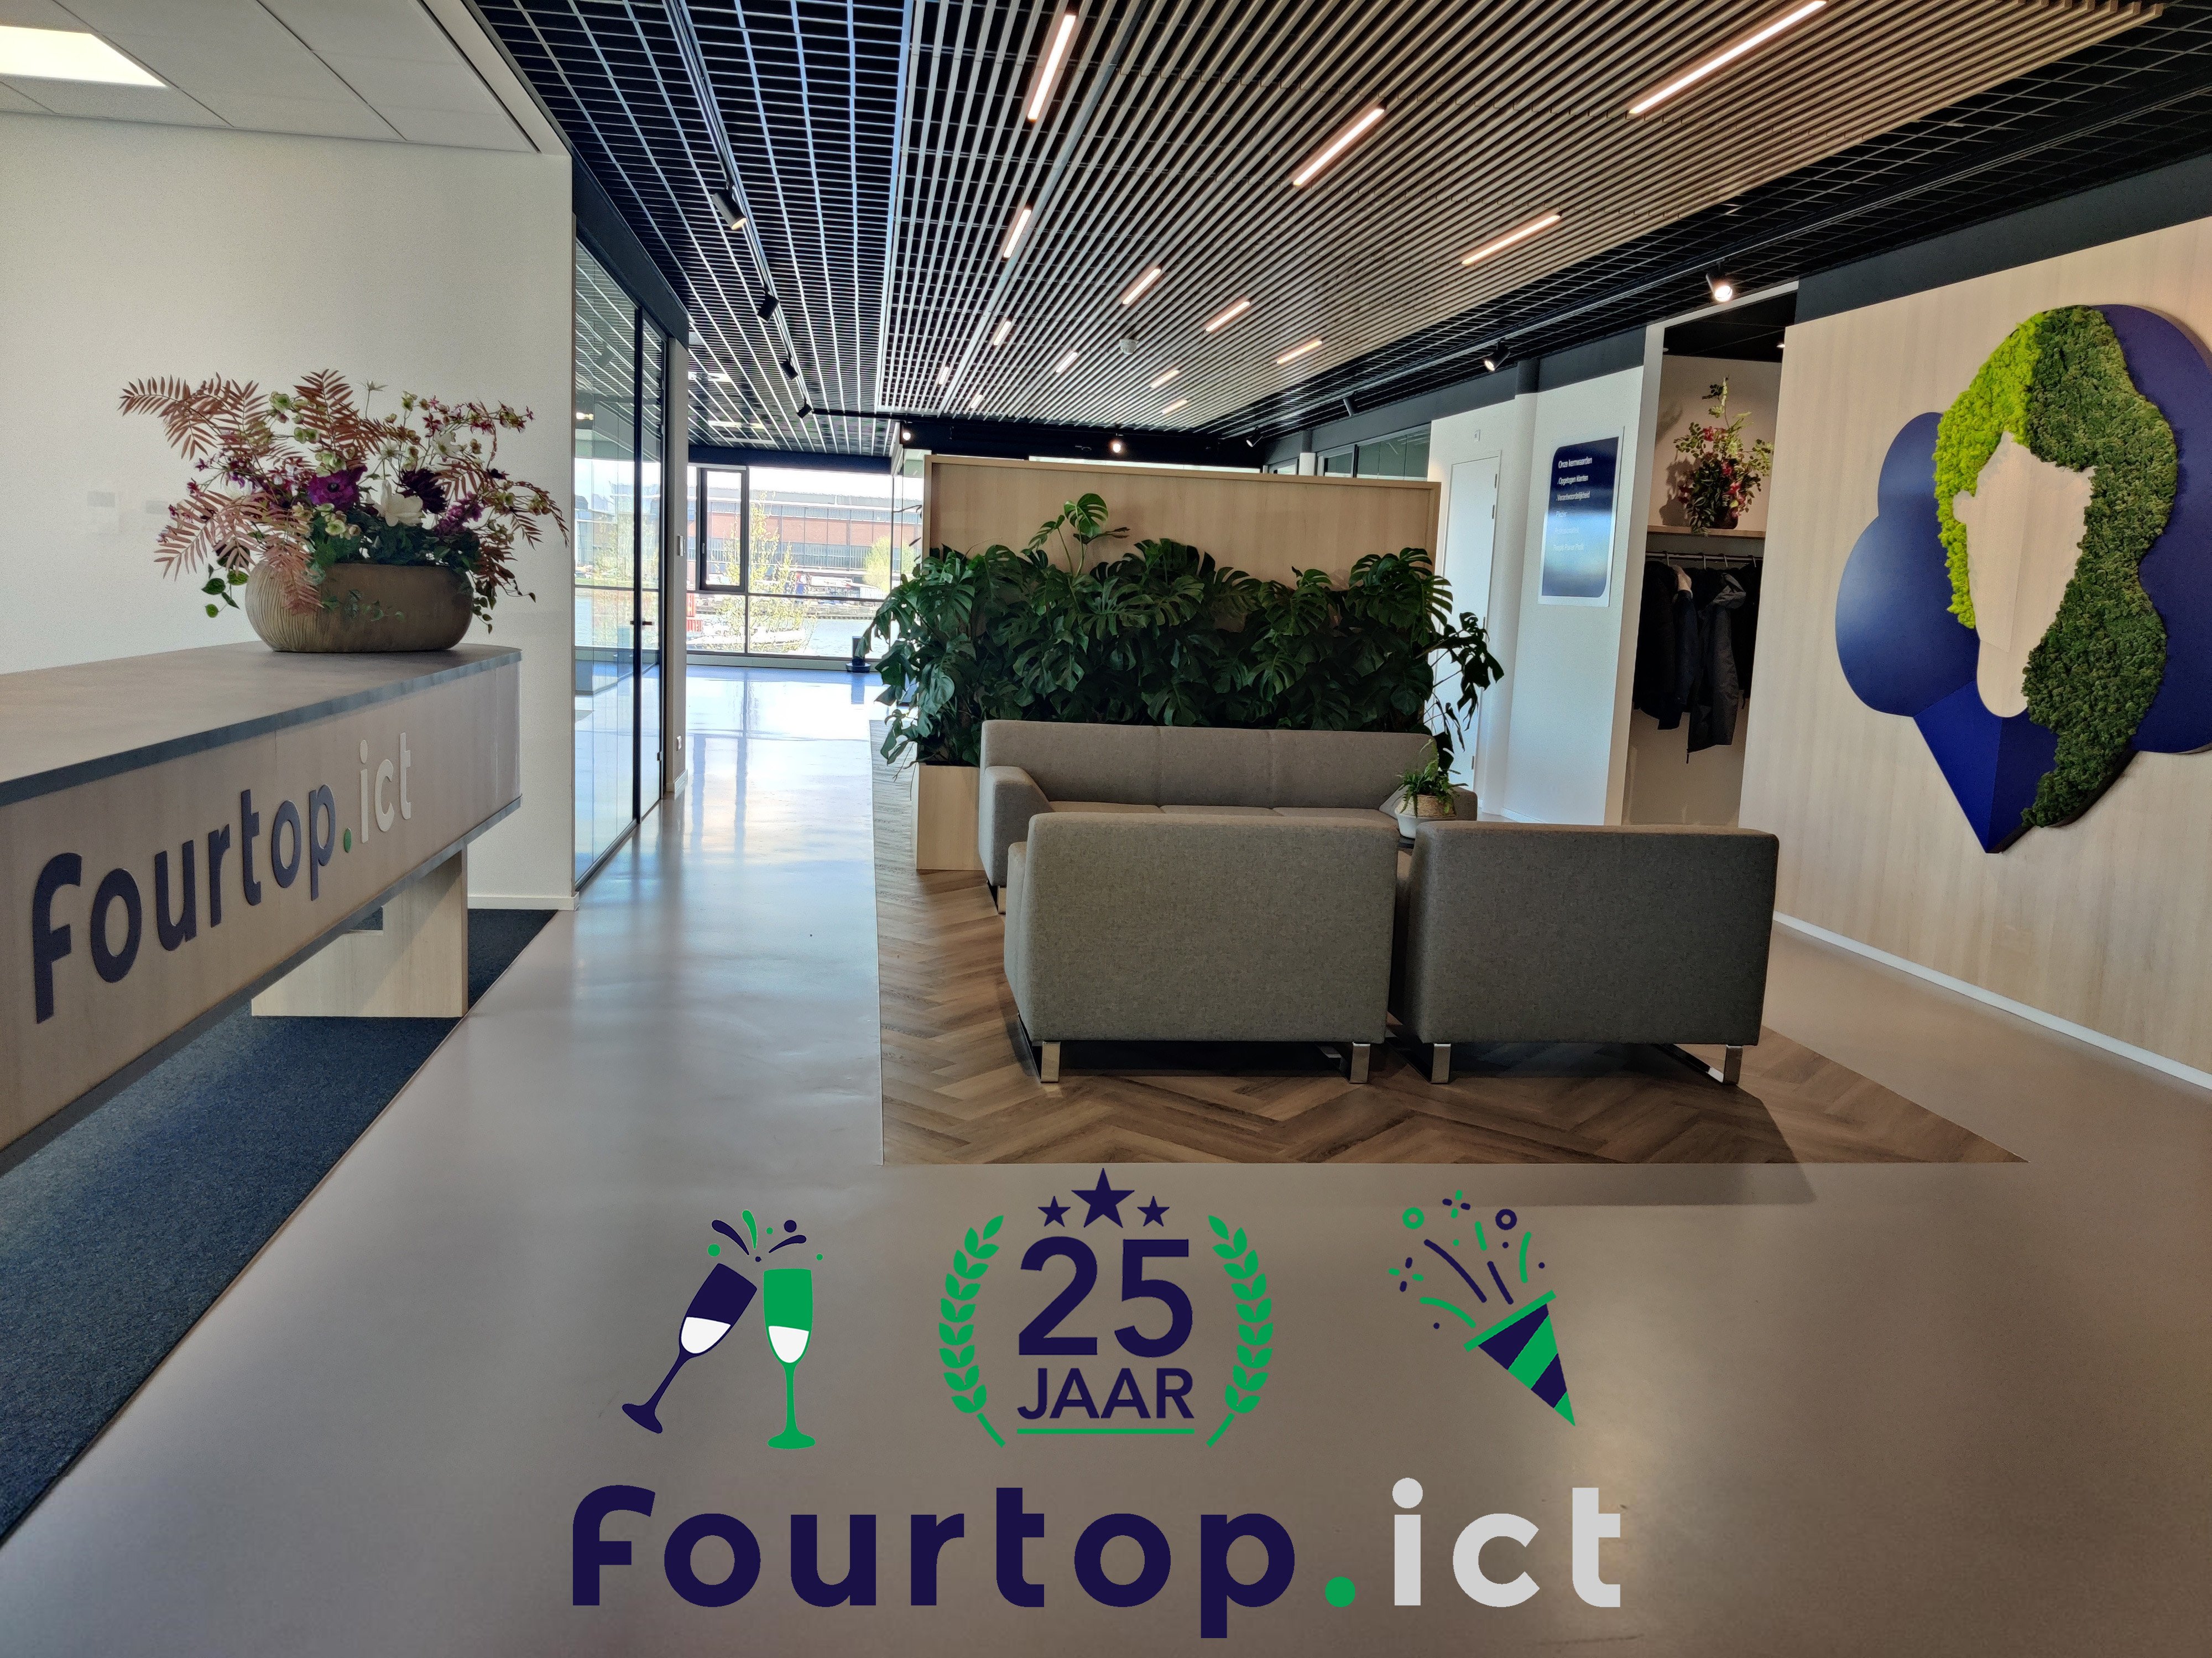 Fourtop ICT 25 jaar